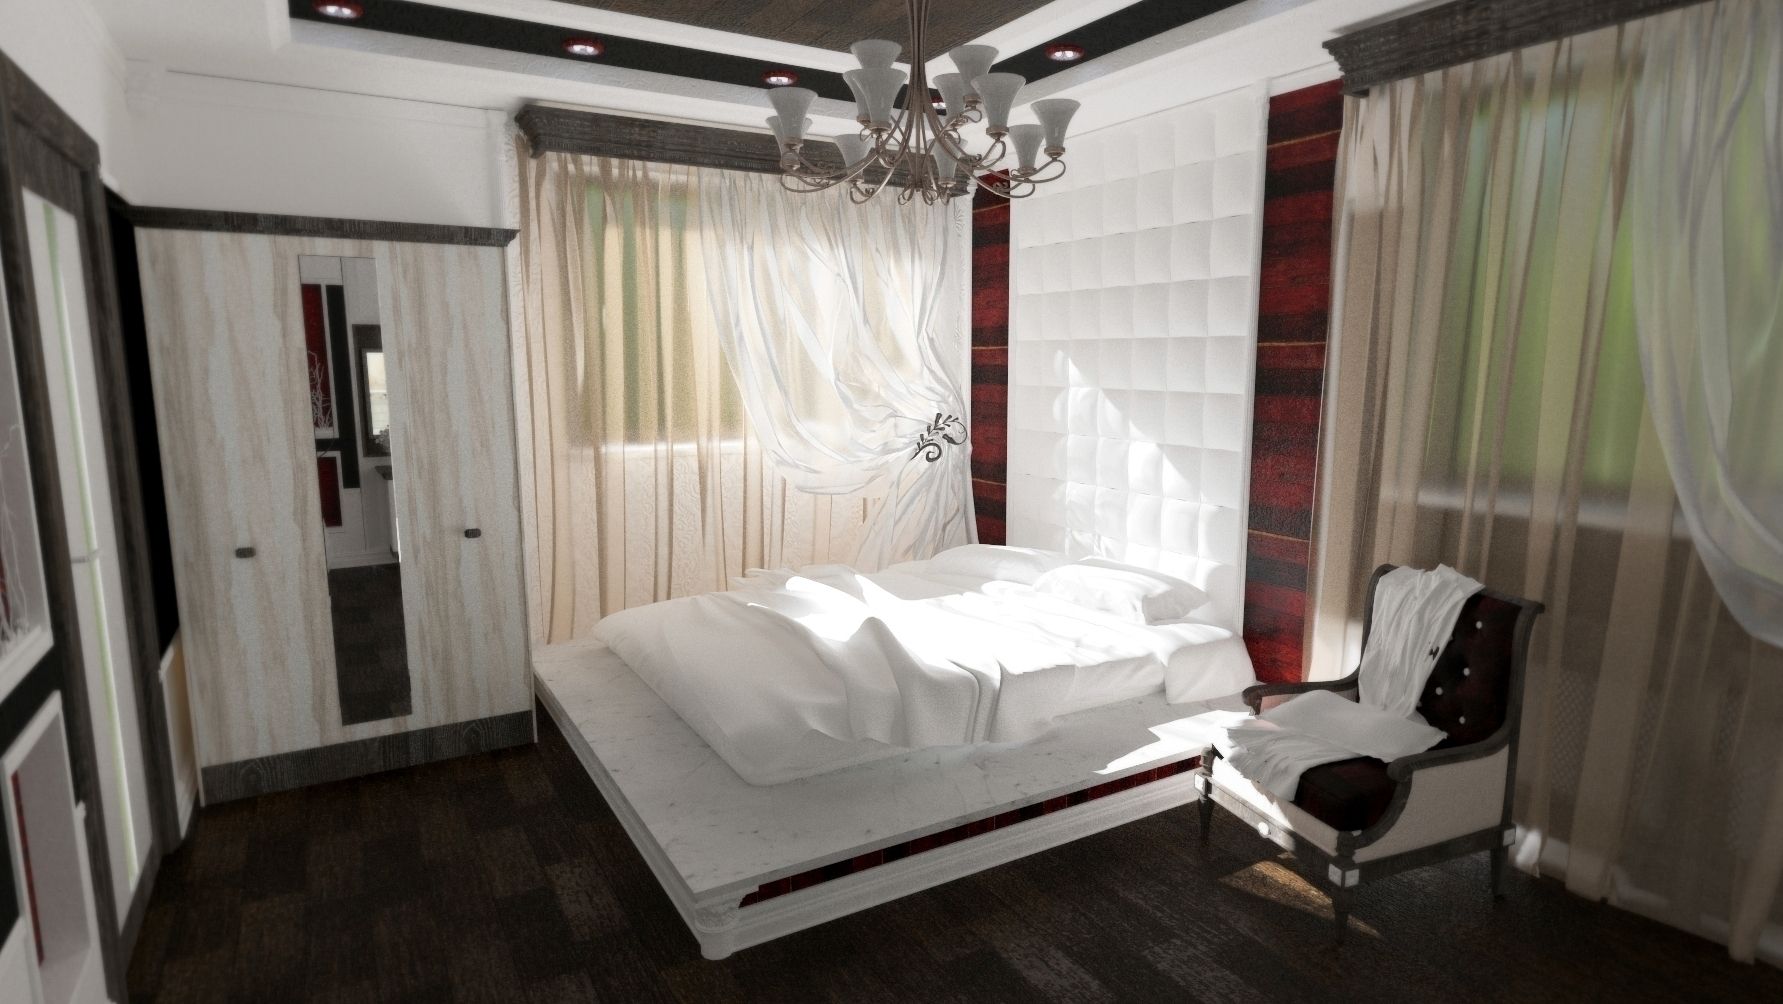 Спальня молодожёнов , Nada-Design Студия дизайна. Nada-Design Студия дизайна. Modern style bedroom